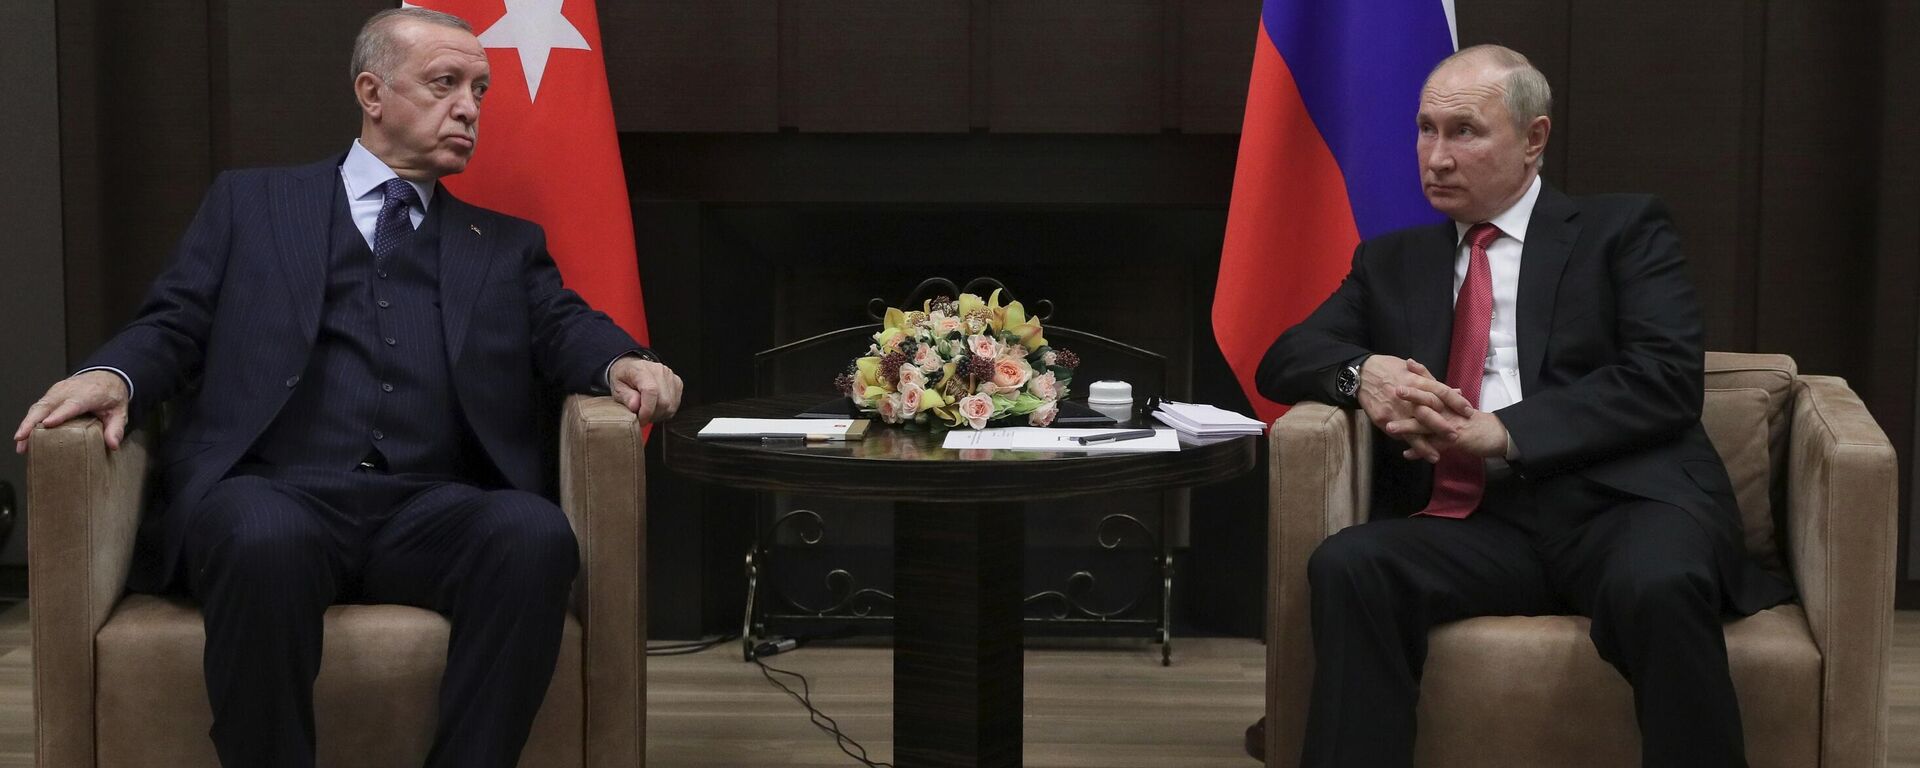 Президент РФ В. Путин провел переговоры с президентом Турции Р. Эрдоганом - Sputnik Latvija, 1920, 01.10.2021